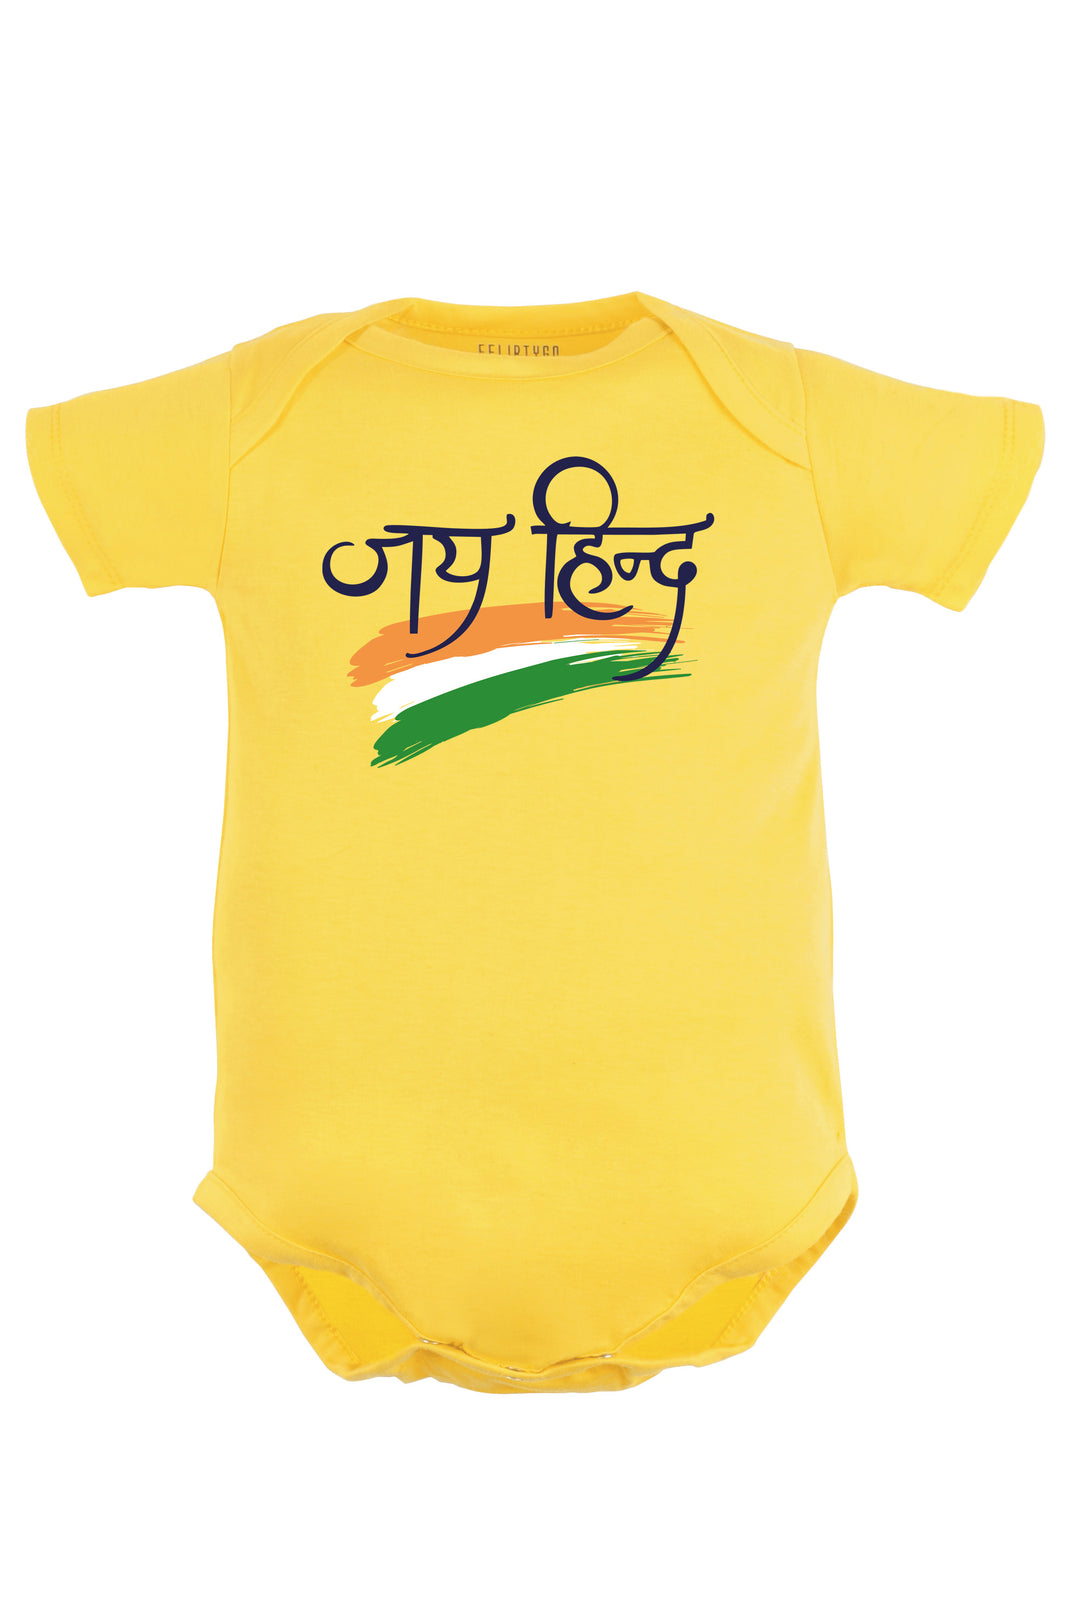 Jai Hind (Hindi) Baby Romper | Onesies